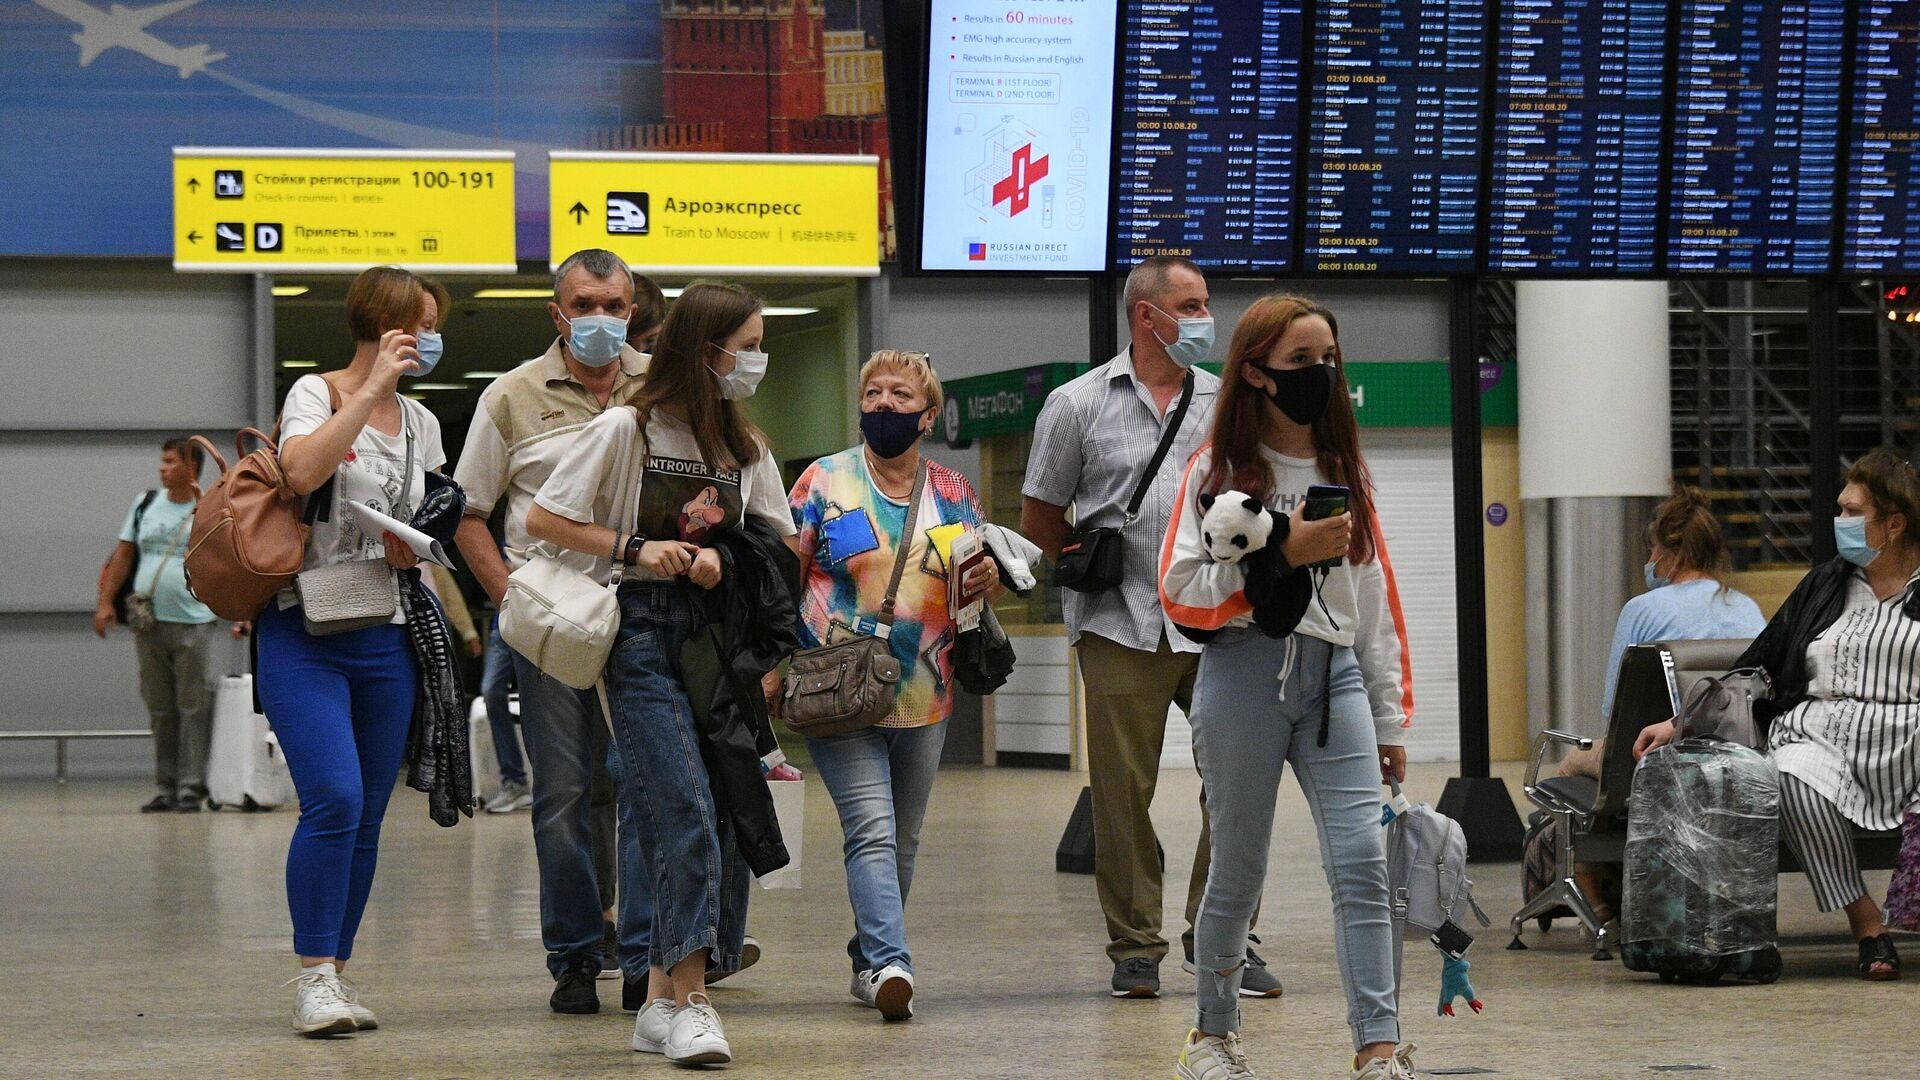 Риа новости 18. Российские туристы в Европе. Туристы в аэропорту. Аэропорт. Российские граждане в аэропорту за границей.